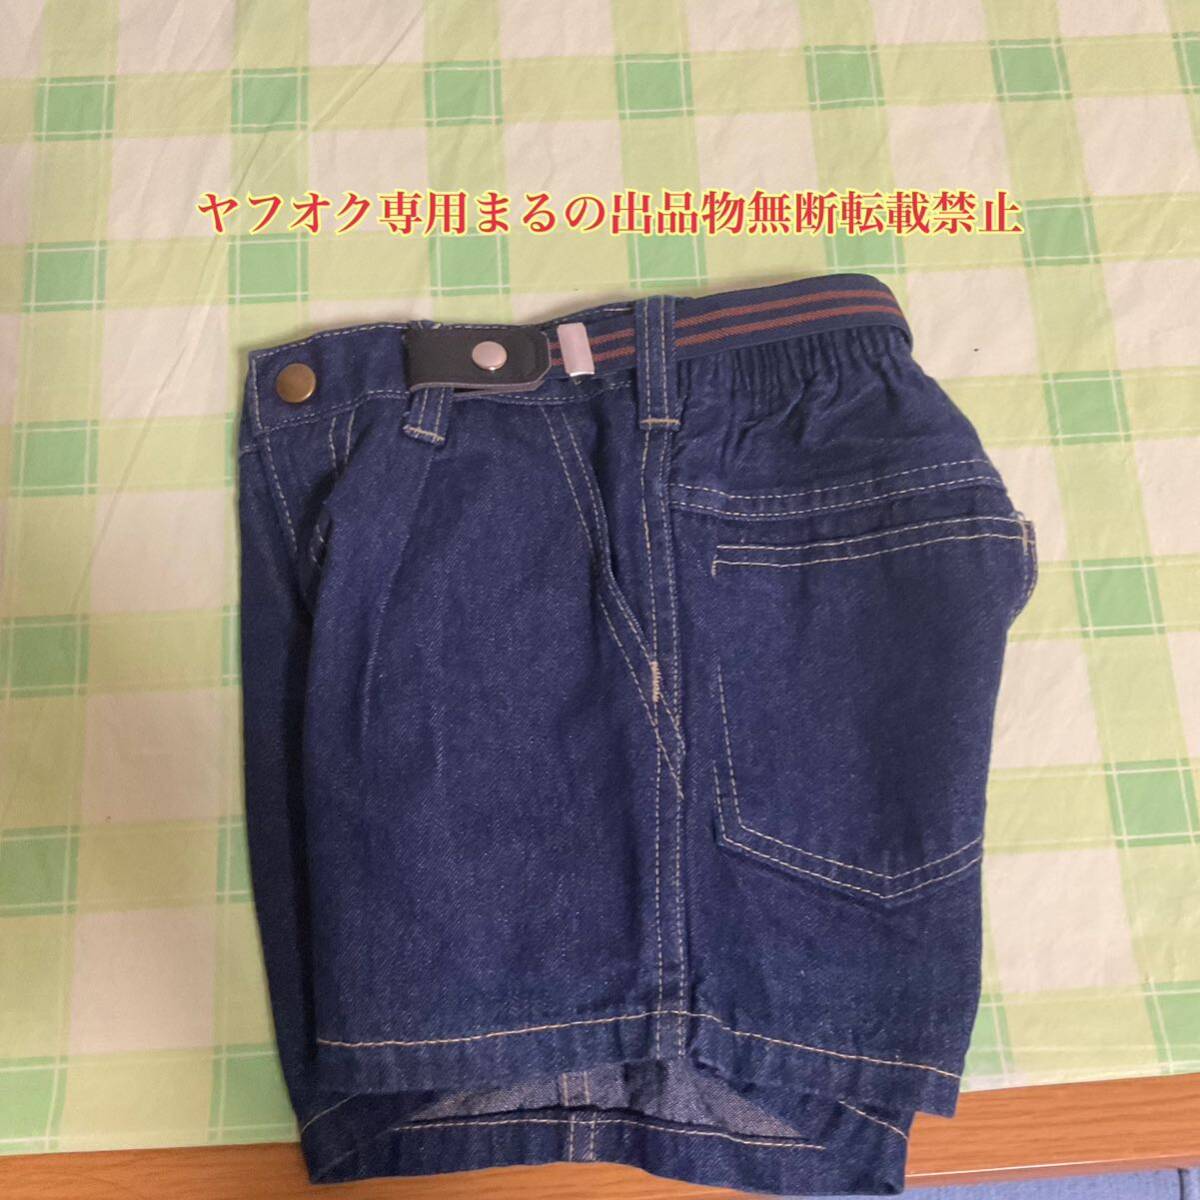 昭和の少年半ズボン サイズが合えば160センチでもの画像2